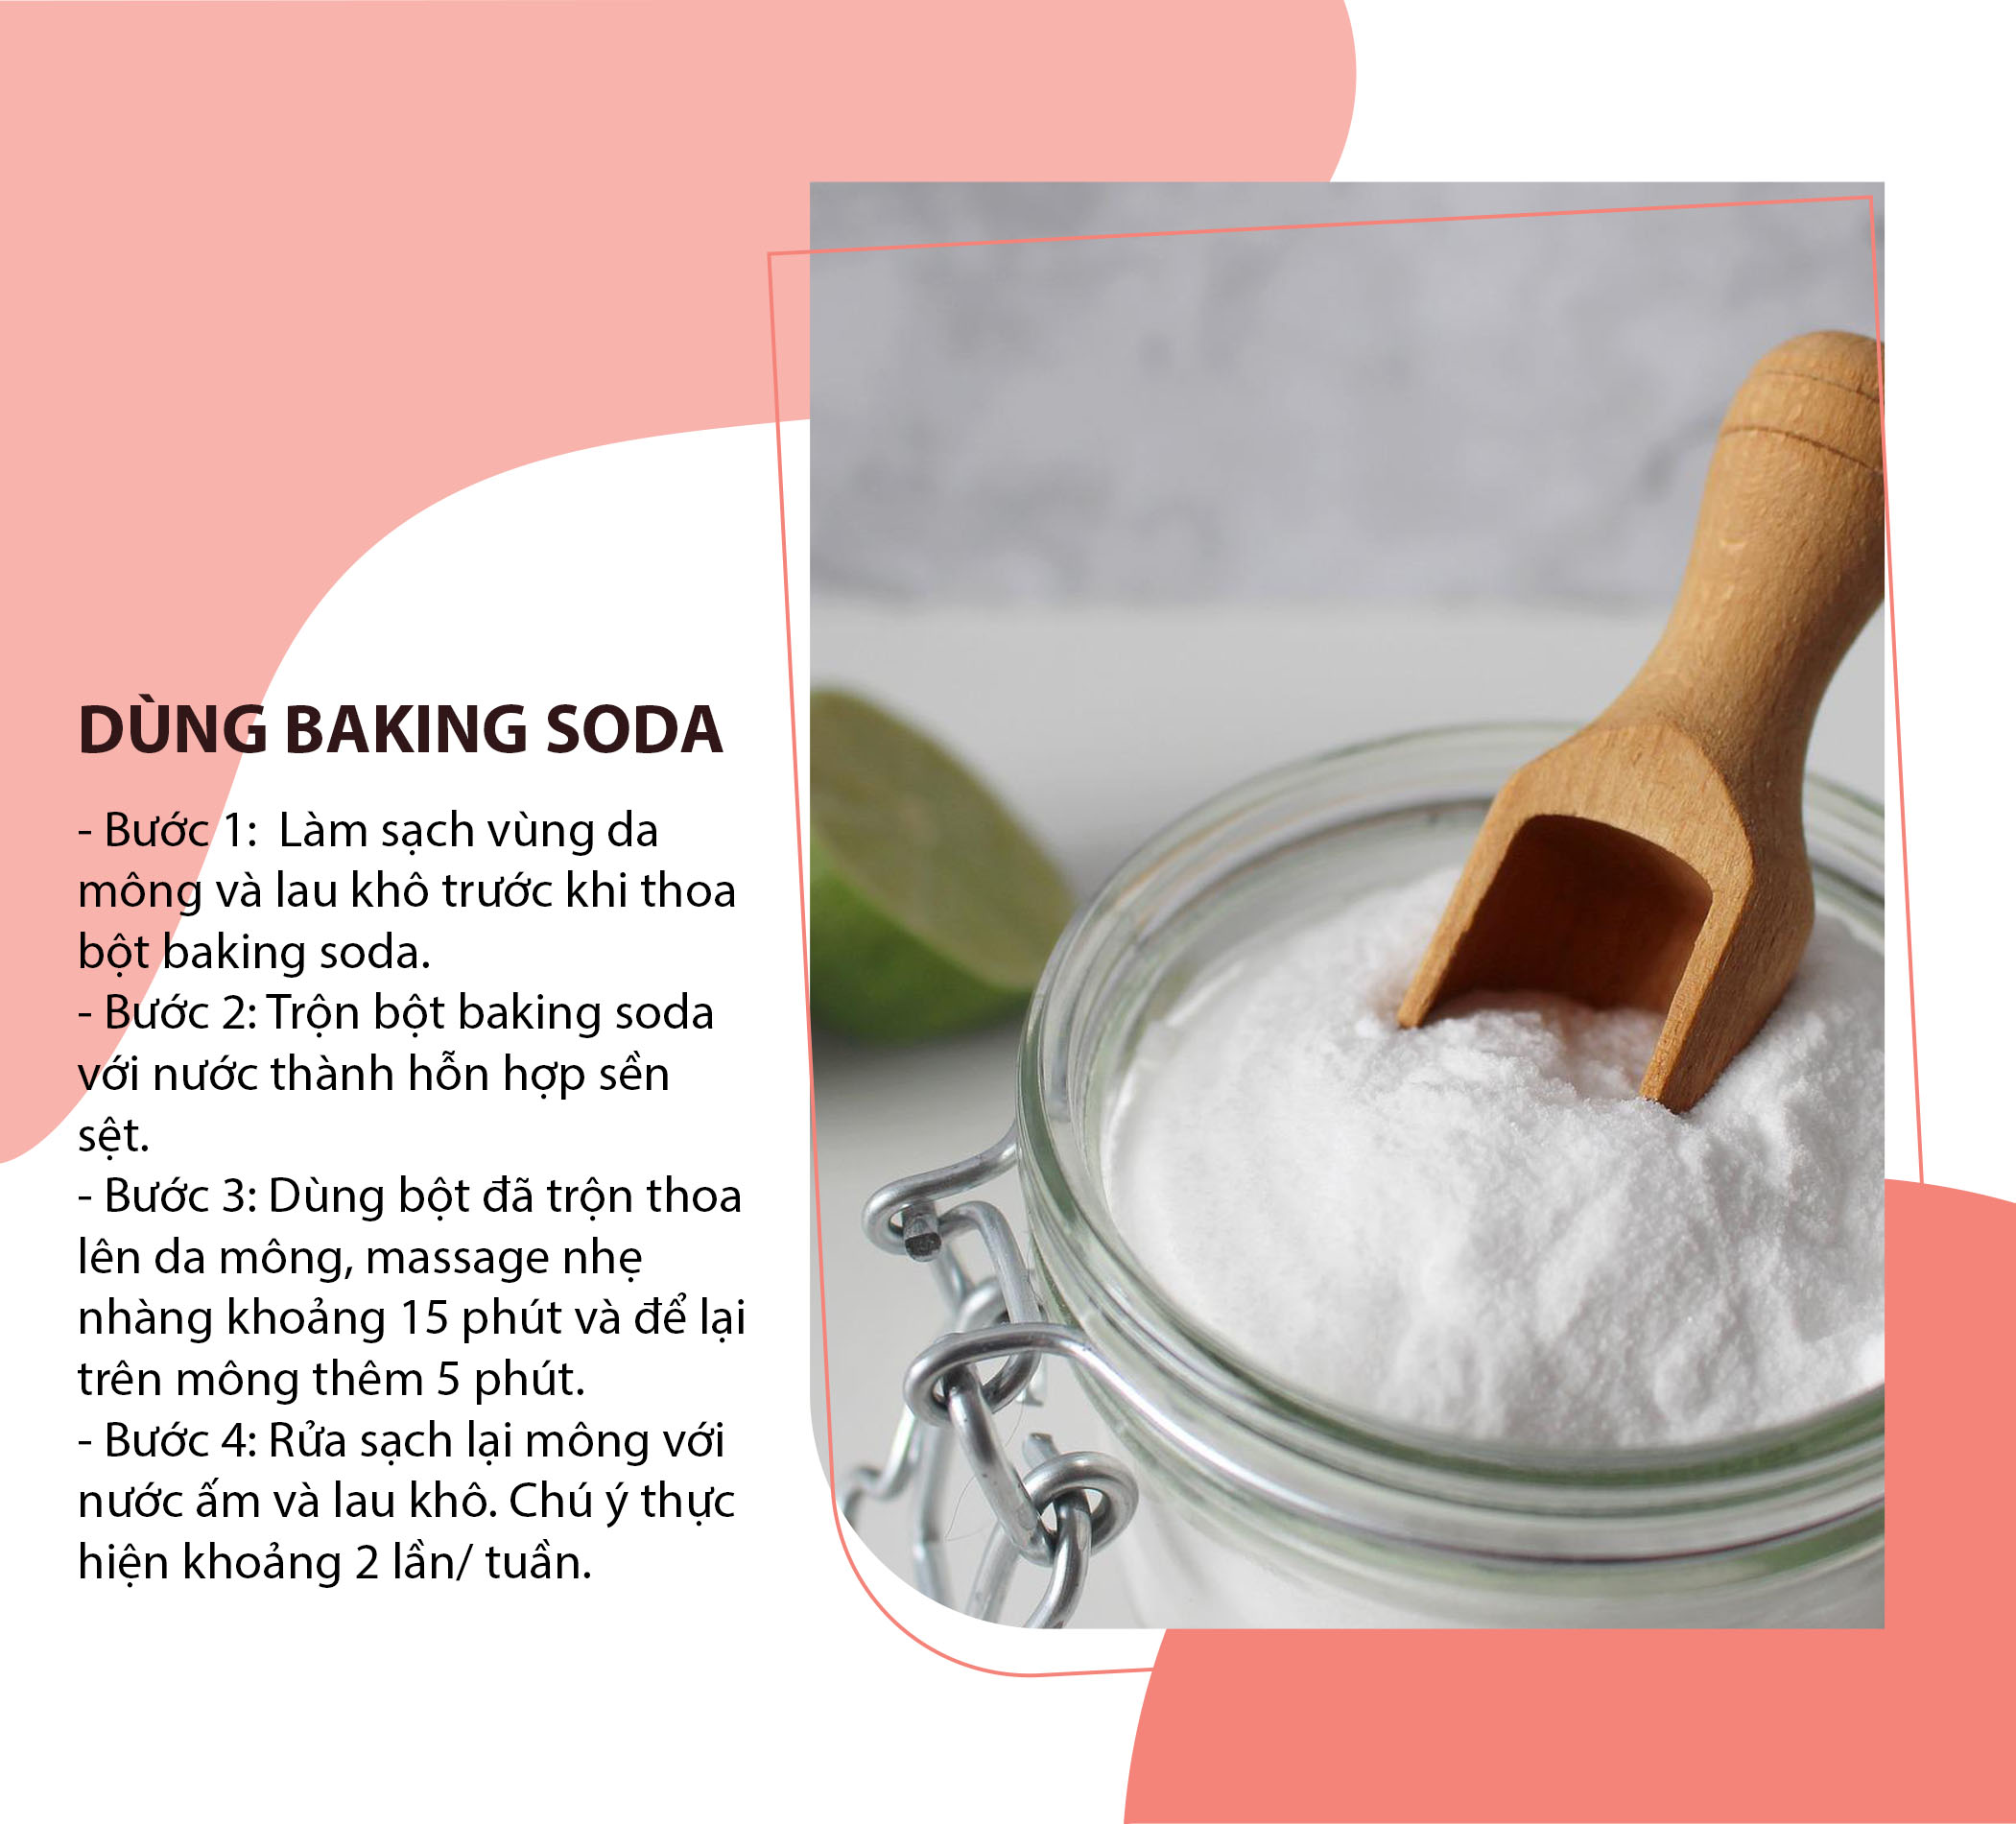 Dùng baking soda giúp mông hết thâm và sần sùi